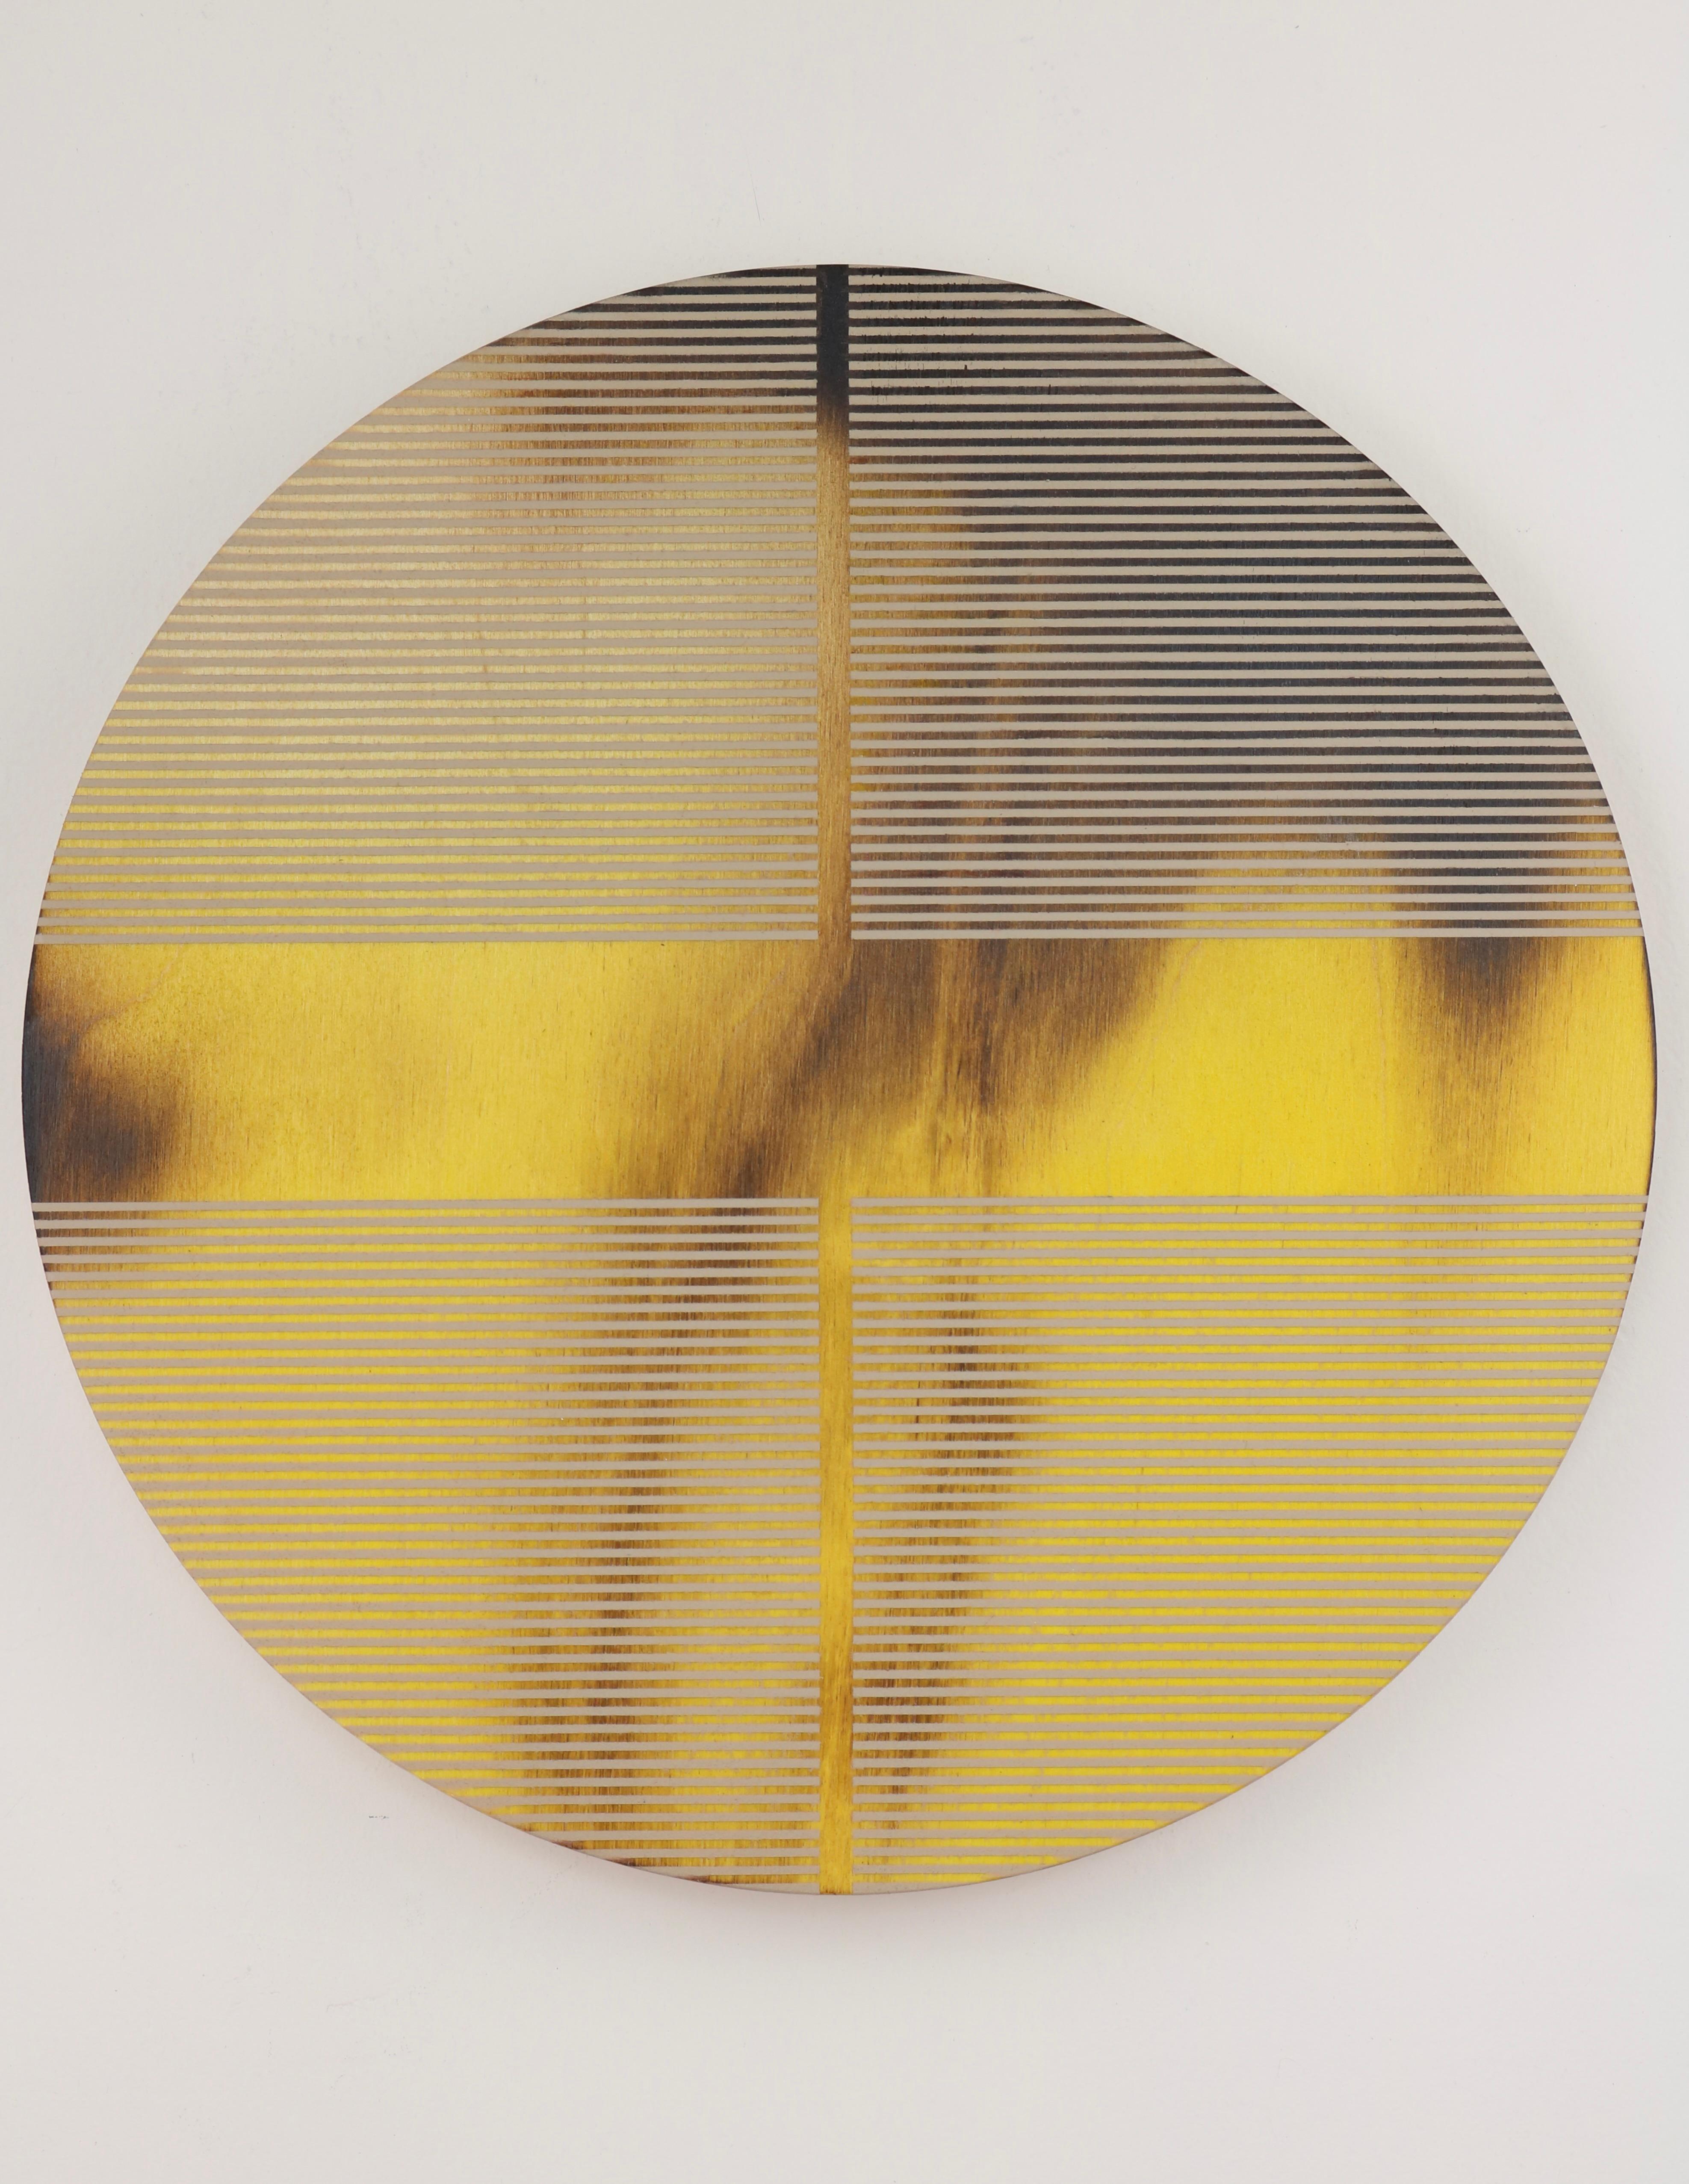 Abstract Painting Melisa Taylor Metzger - Pilule jaune citron (peinture ronde minimaliste sur bois couleur dopamine)